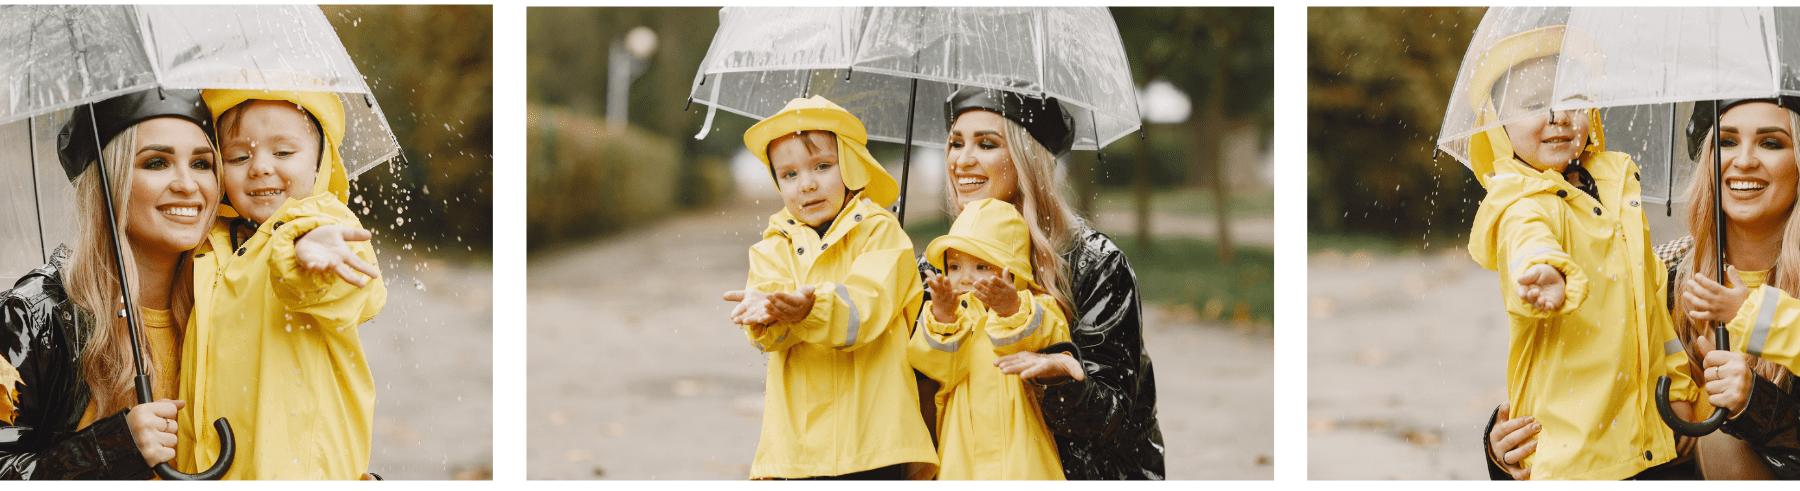 אוסף שלוש תמונות של אמא עם ילדים שמחזיקה מטריה ענקית בגשם, האם והילדים אשר לובשים מעילי גשם בחוץ